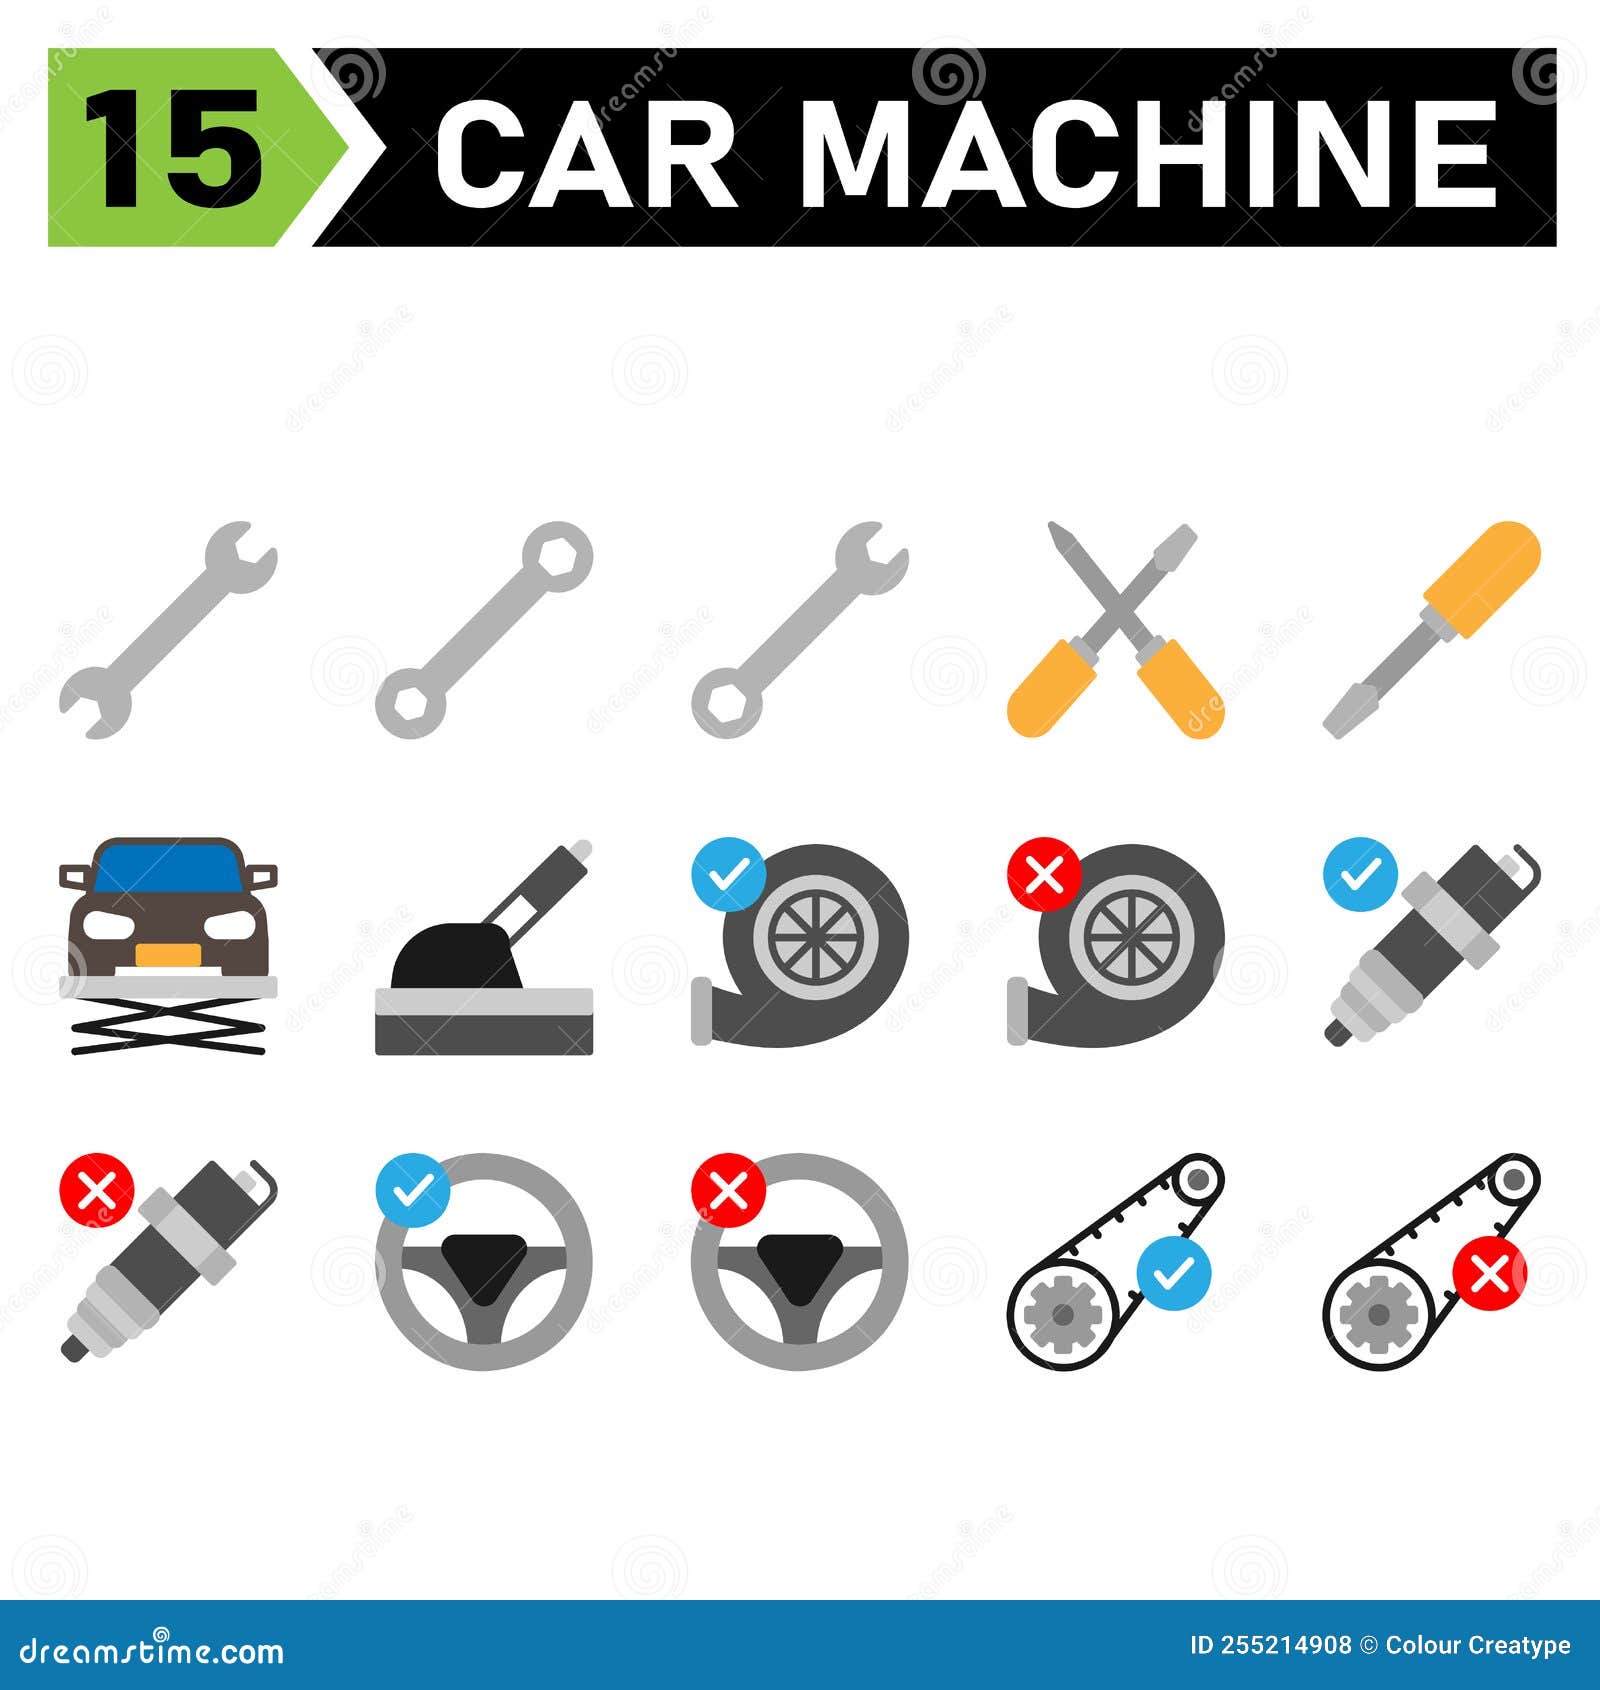 l'ensemble d'icônes de machine de voiture comprend des outils, un outil,  une clé, un